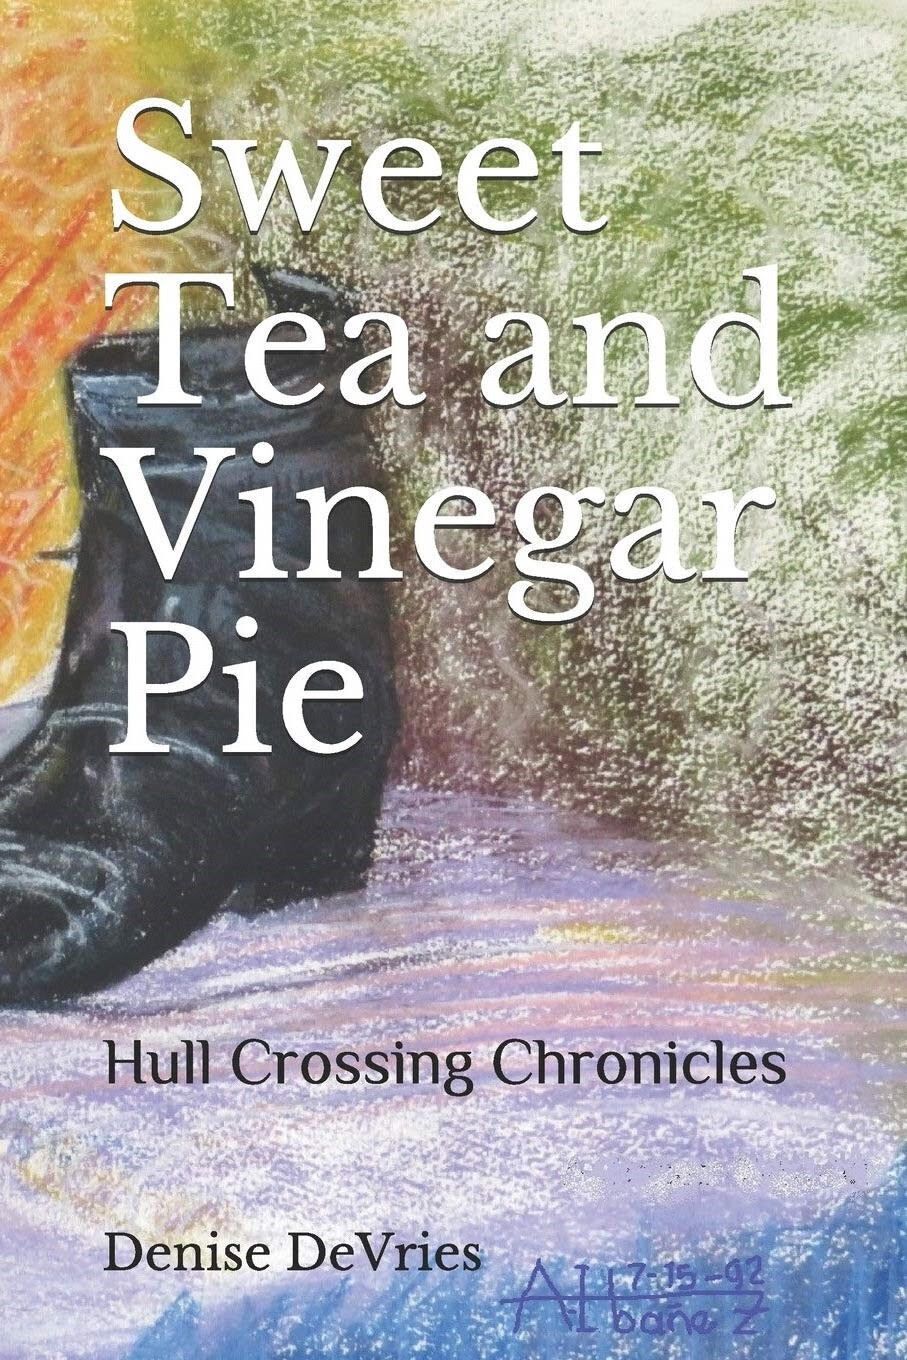 Sweet tea and vinegar pie